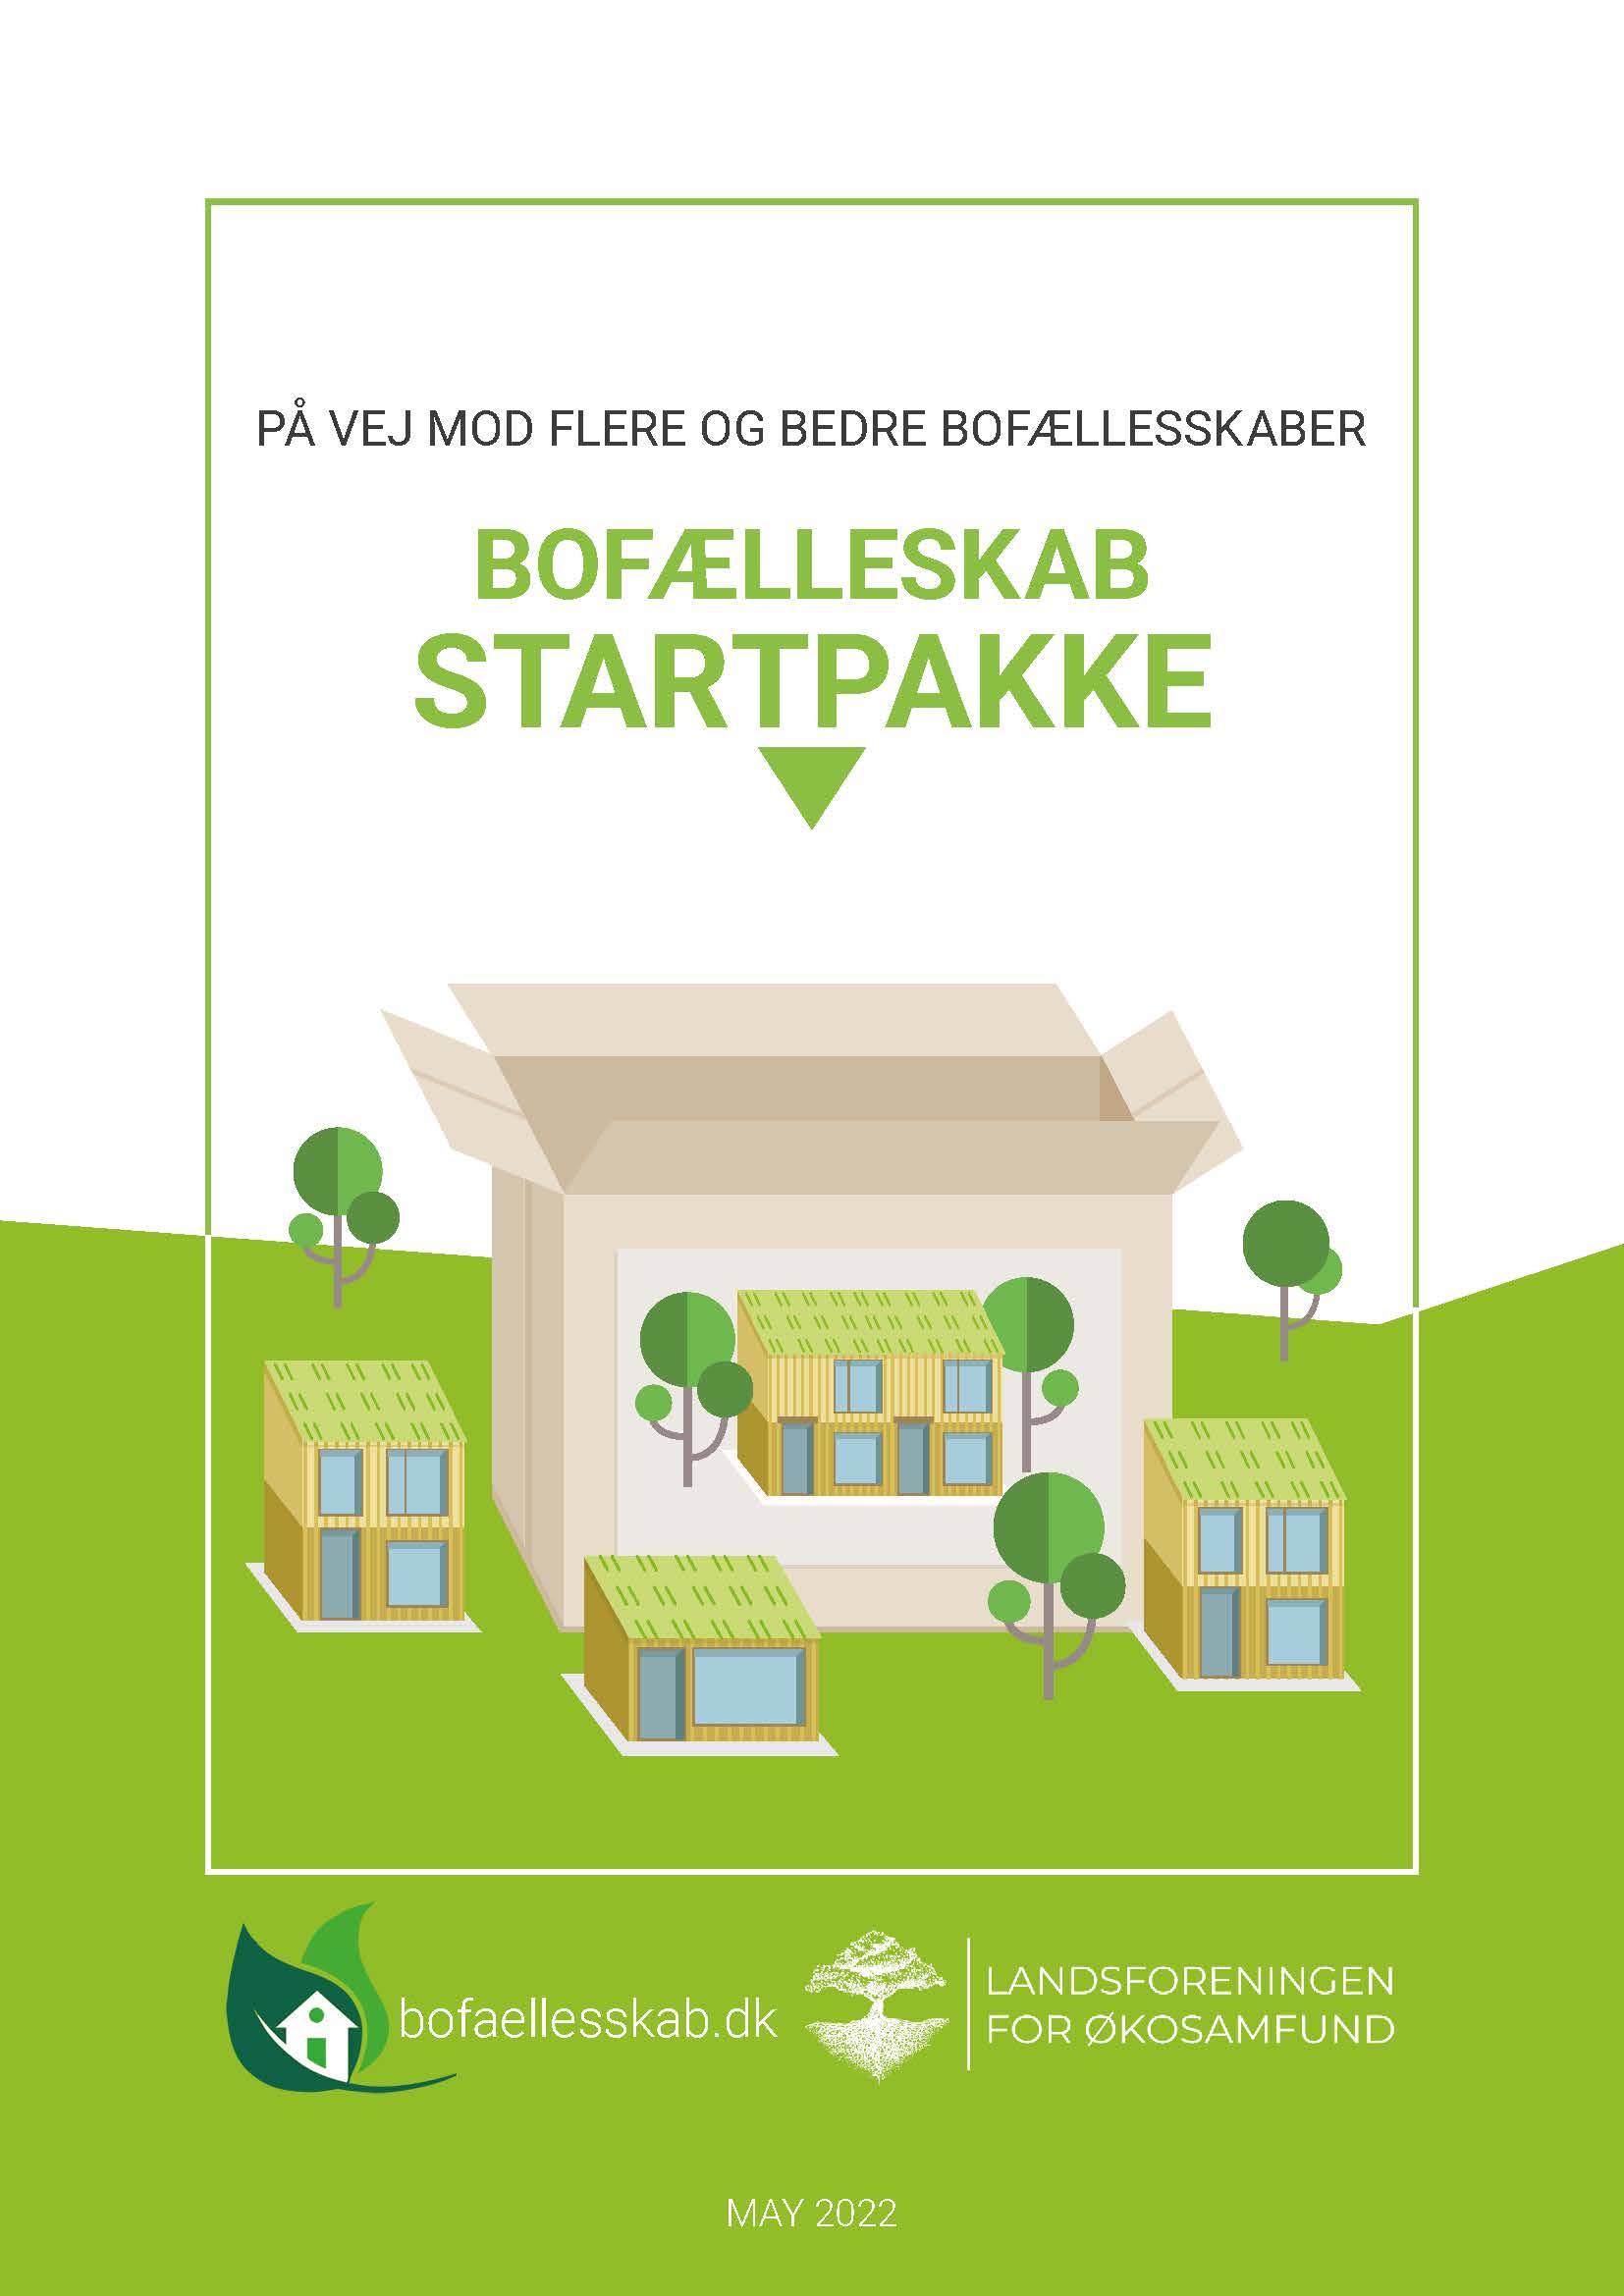 Introduction Startpakke bofaelleskab Side 1